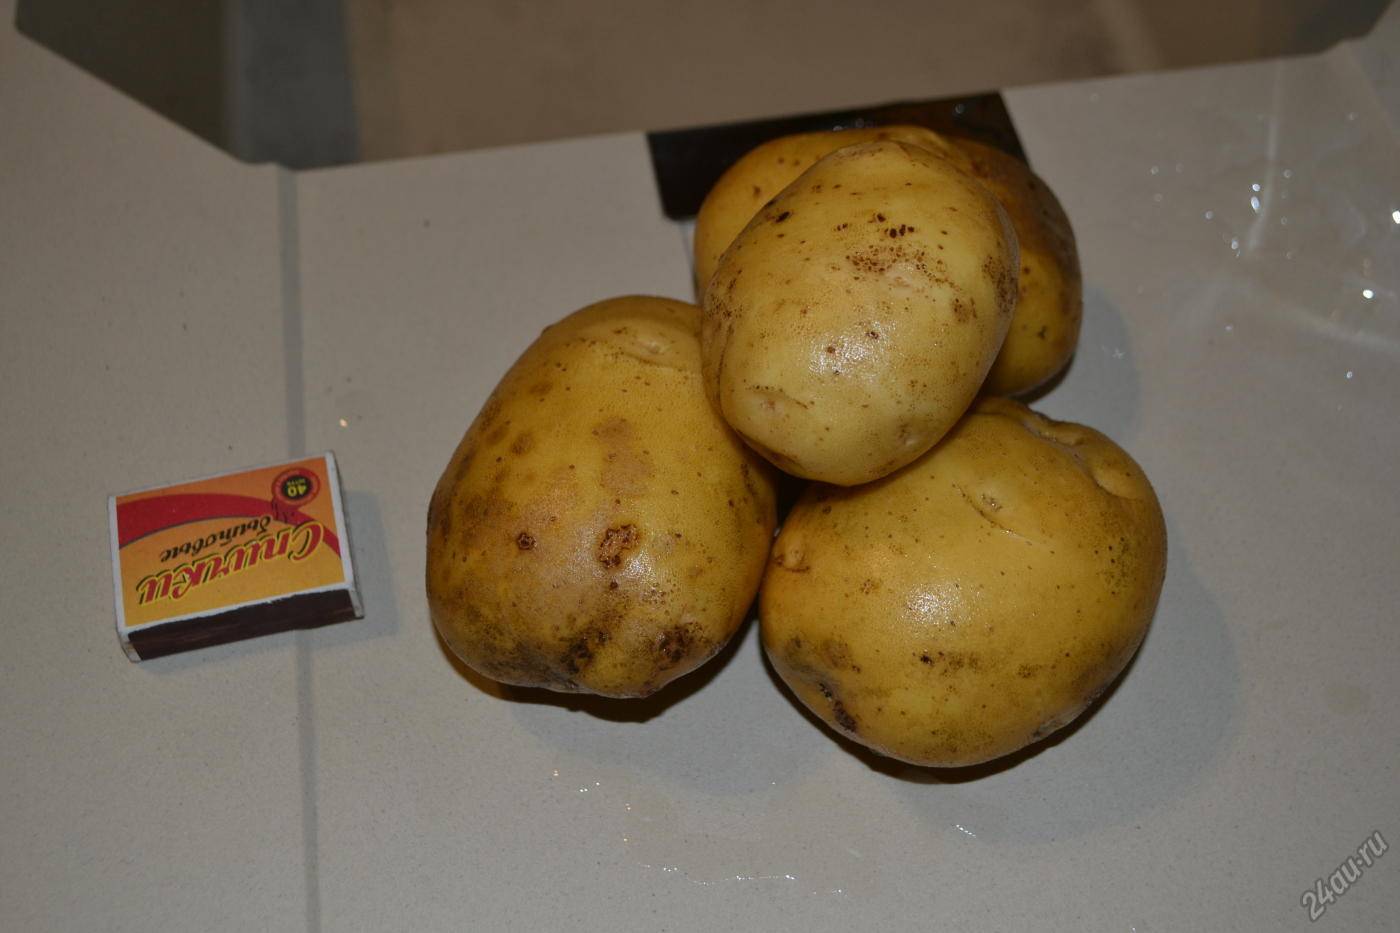 Картофель латона: описание сорта, фото, отзывы о вкусовых качествах, характеристика урожайности и советы по выращиванию и уходу